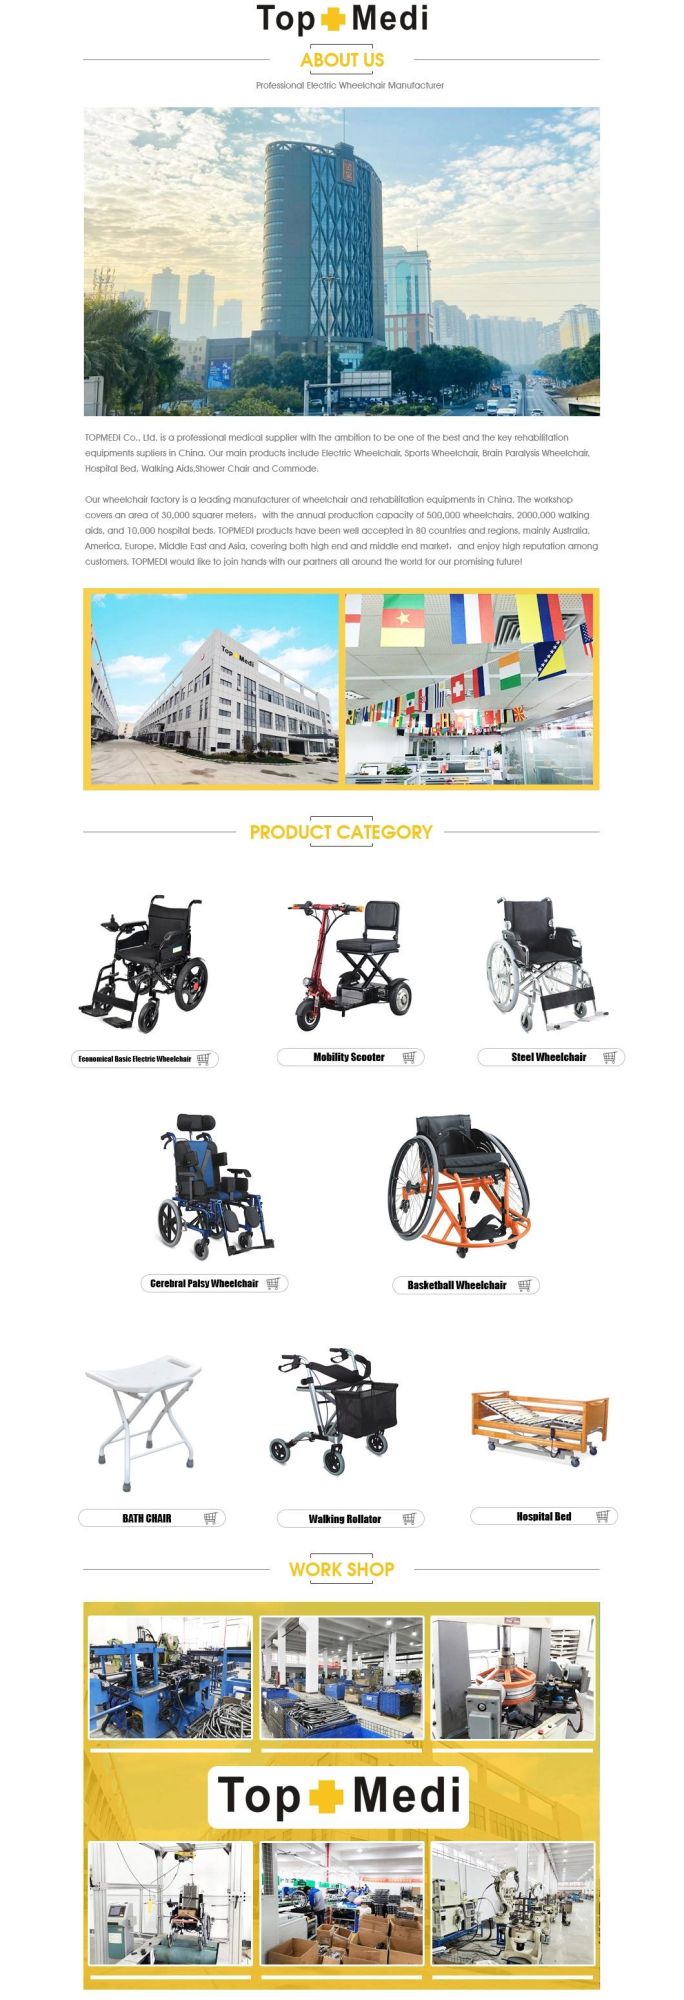 Topmedi Easy Foldable Lightweight Aluminum Wheelchair for The Elderly